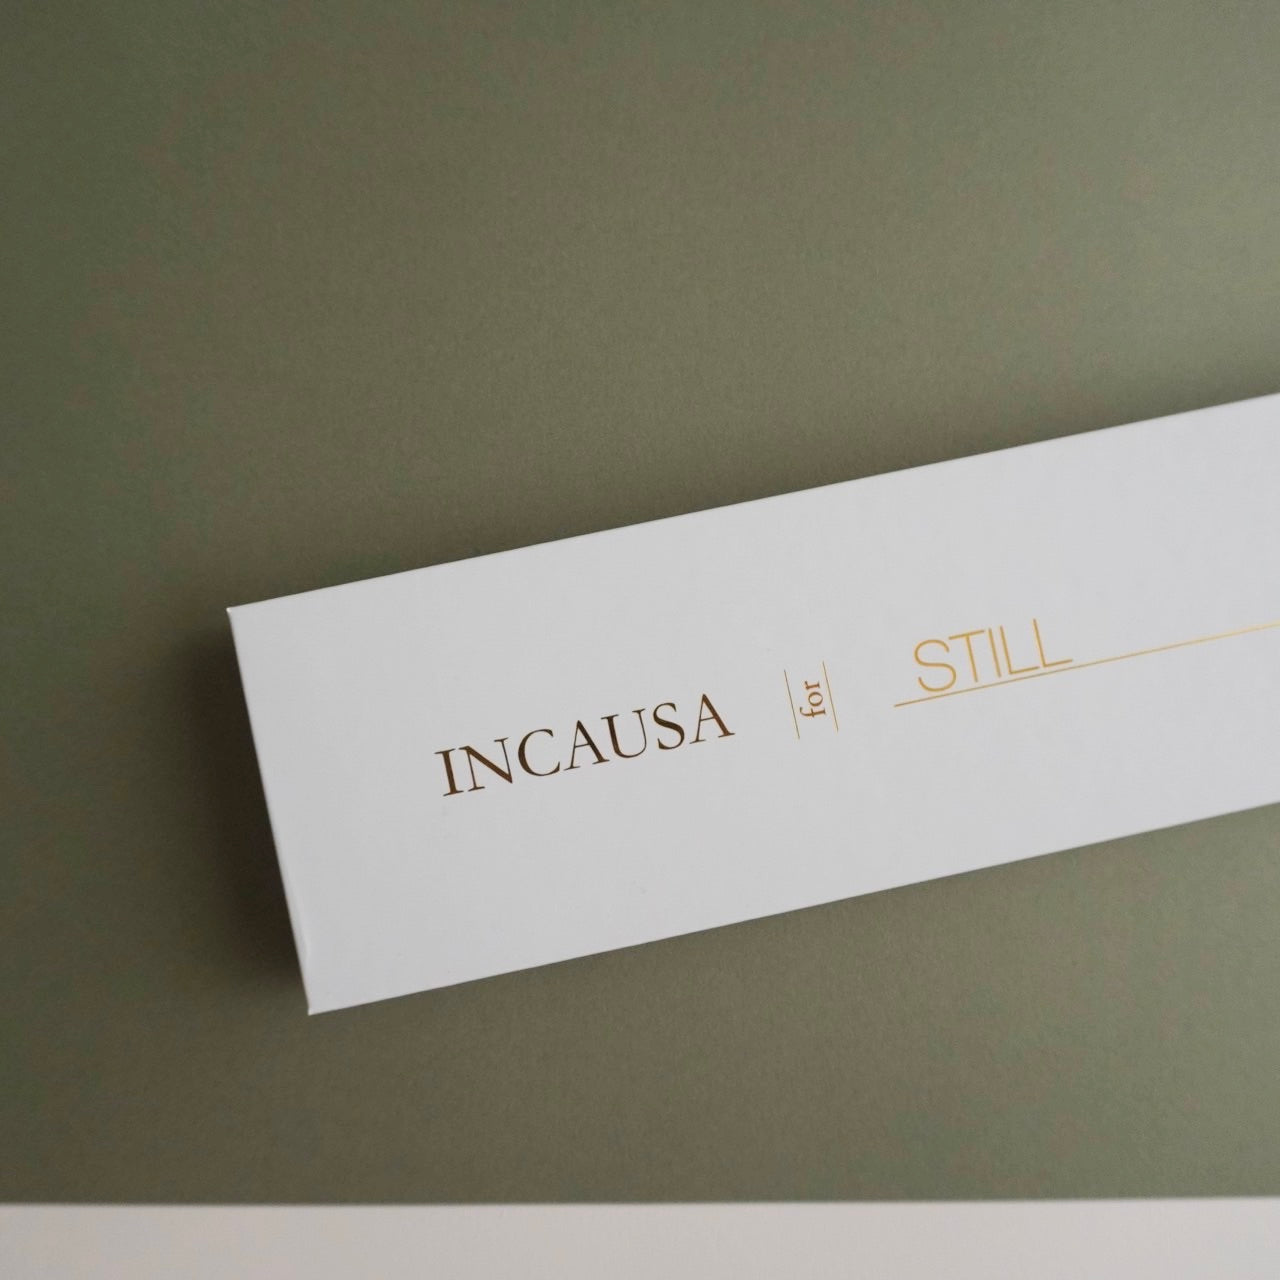 Incausa for Still Set: Incense & Soap Refill box